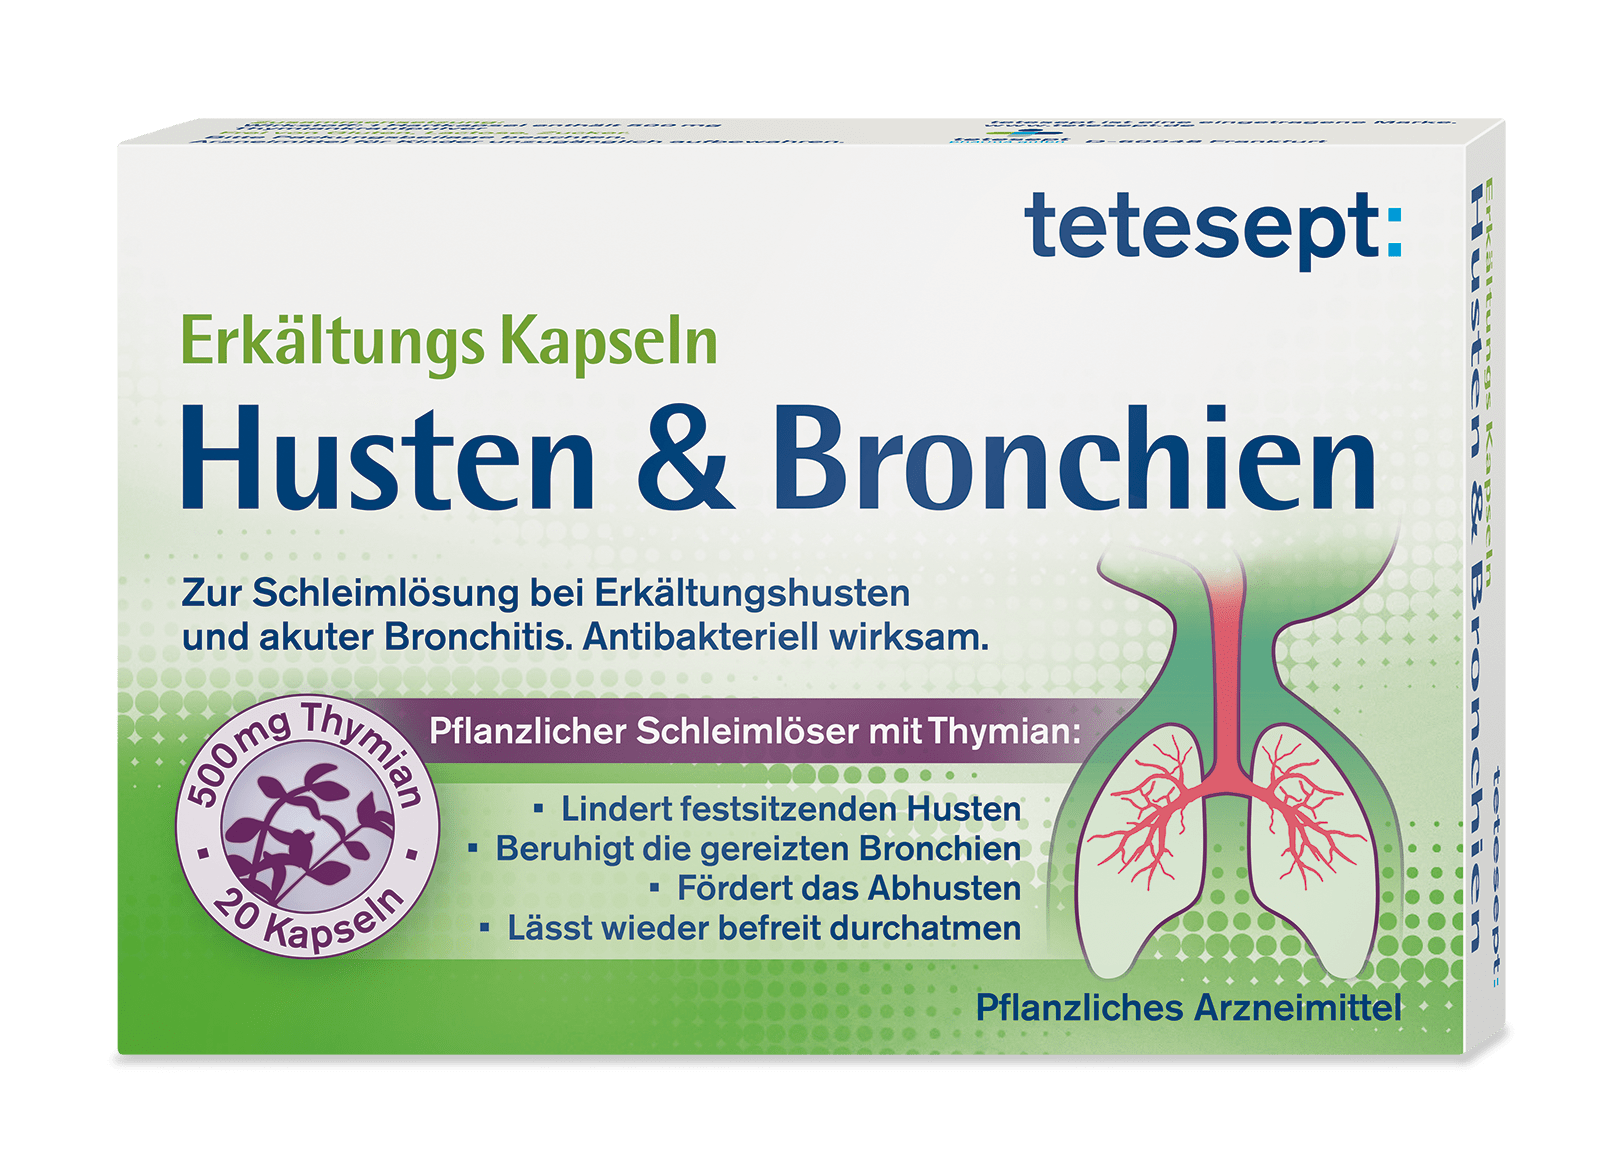 Erkältungs Kapseln Husten & Bronchien - tetesept